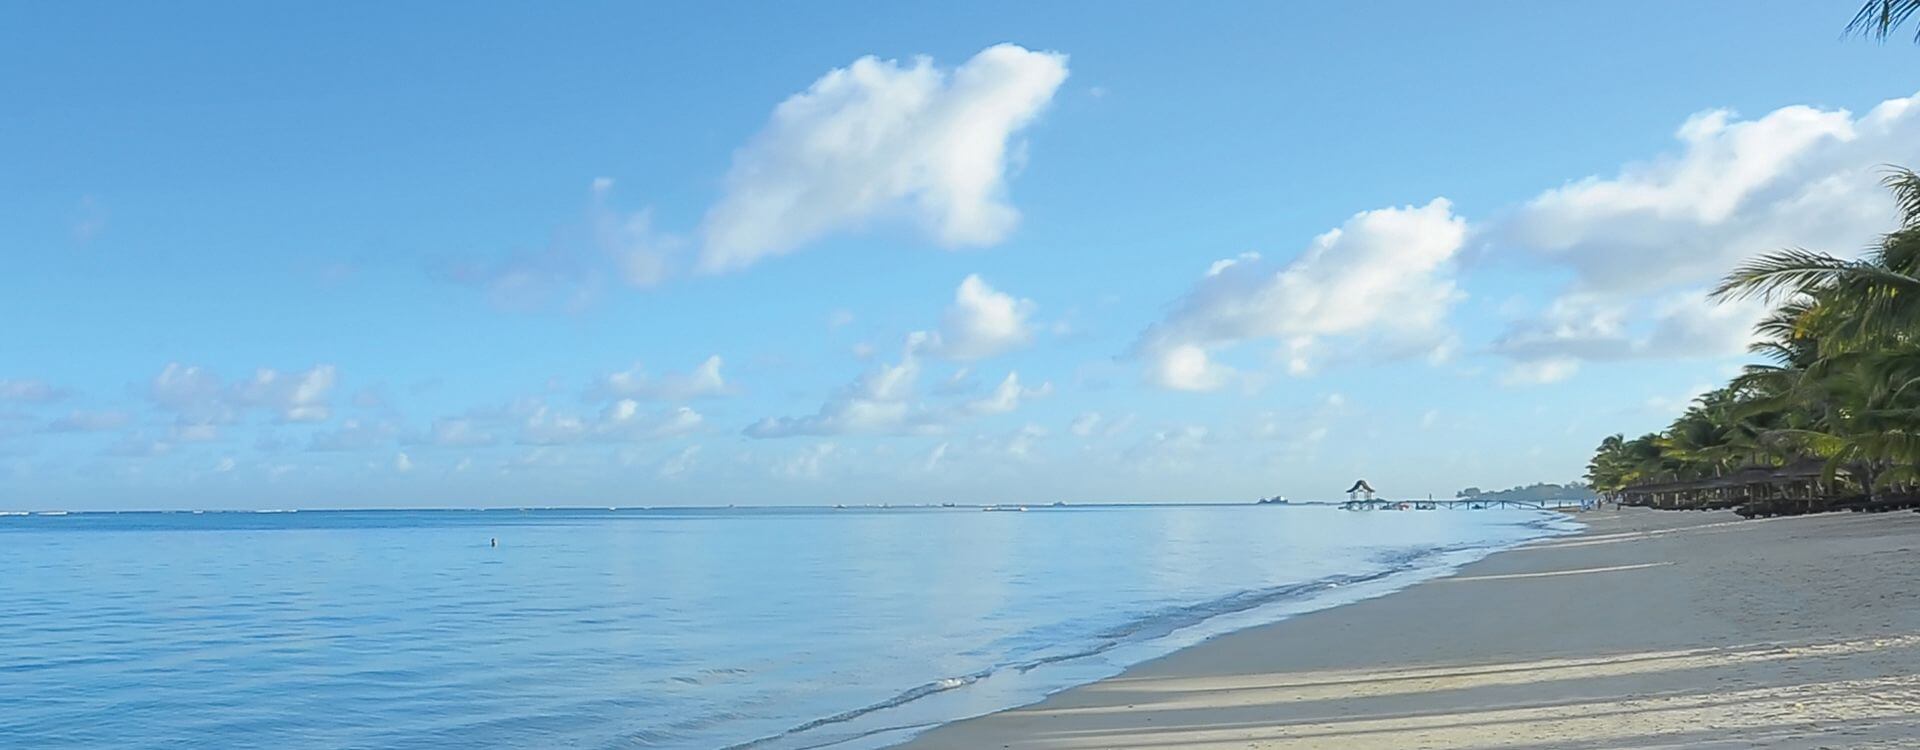 Mauritius mit seinen herrlich weißen Sandstränden